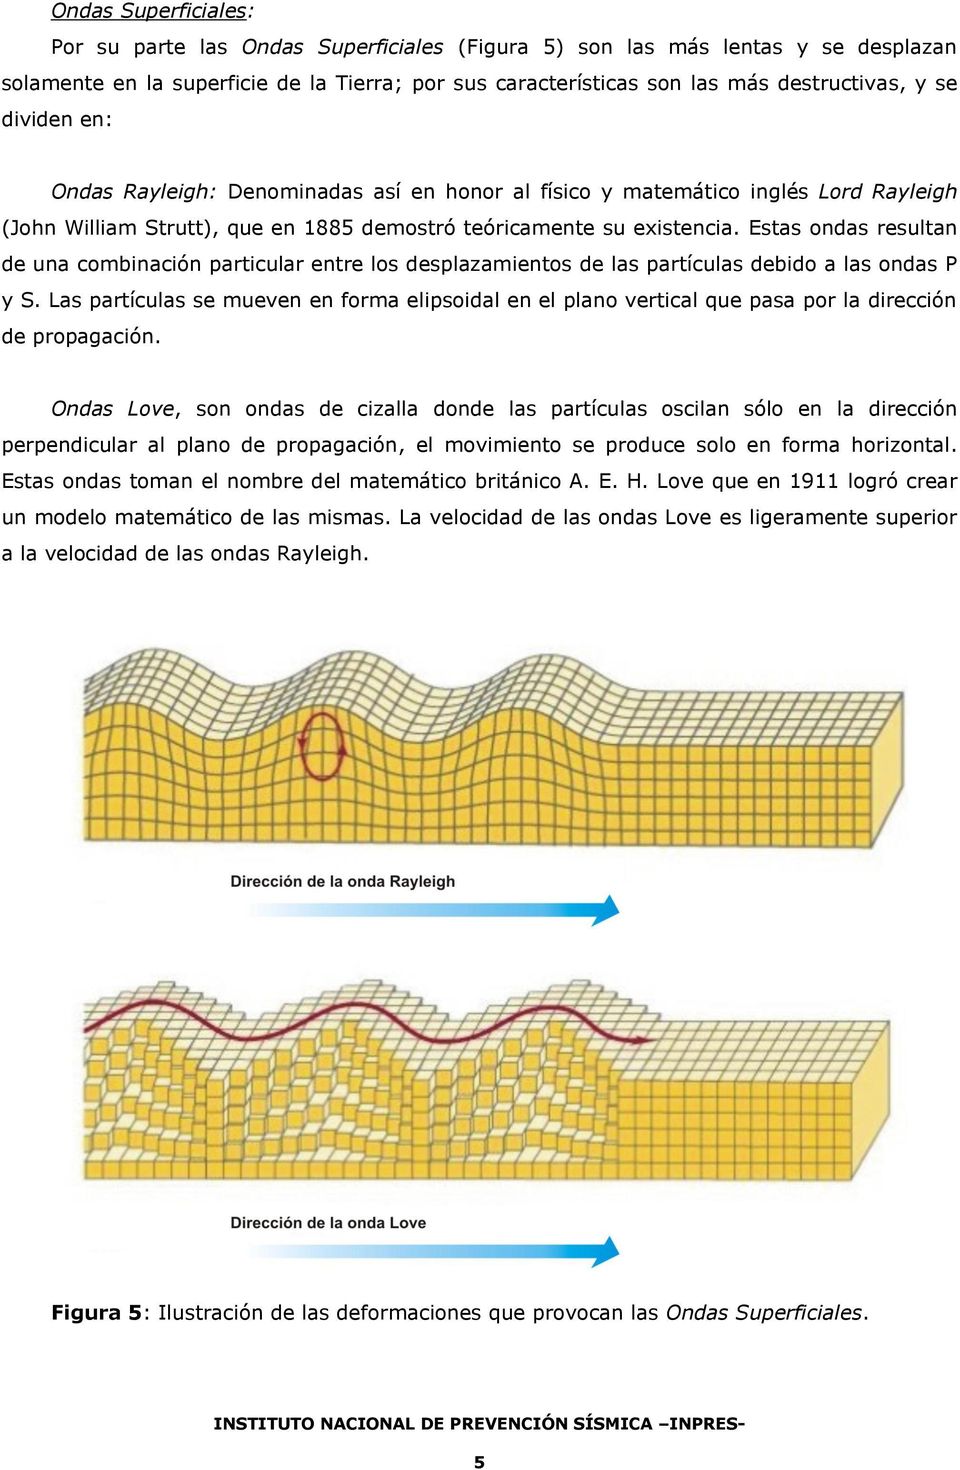 Estas ondas resultan de una combinación particular entre los desplazamientos de las partículas debido a las ondas P y S.